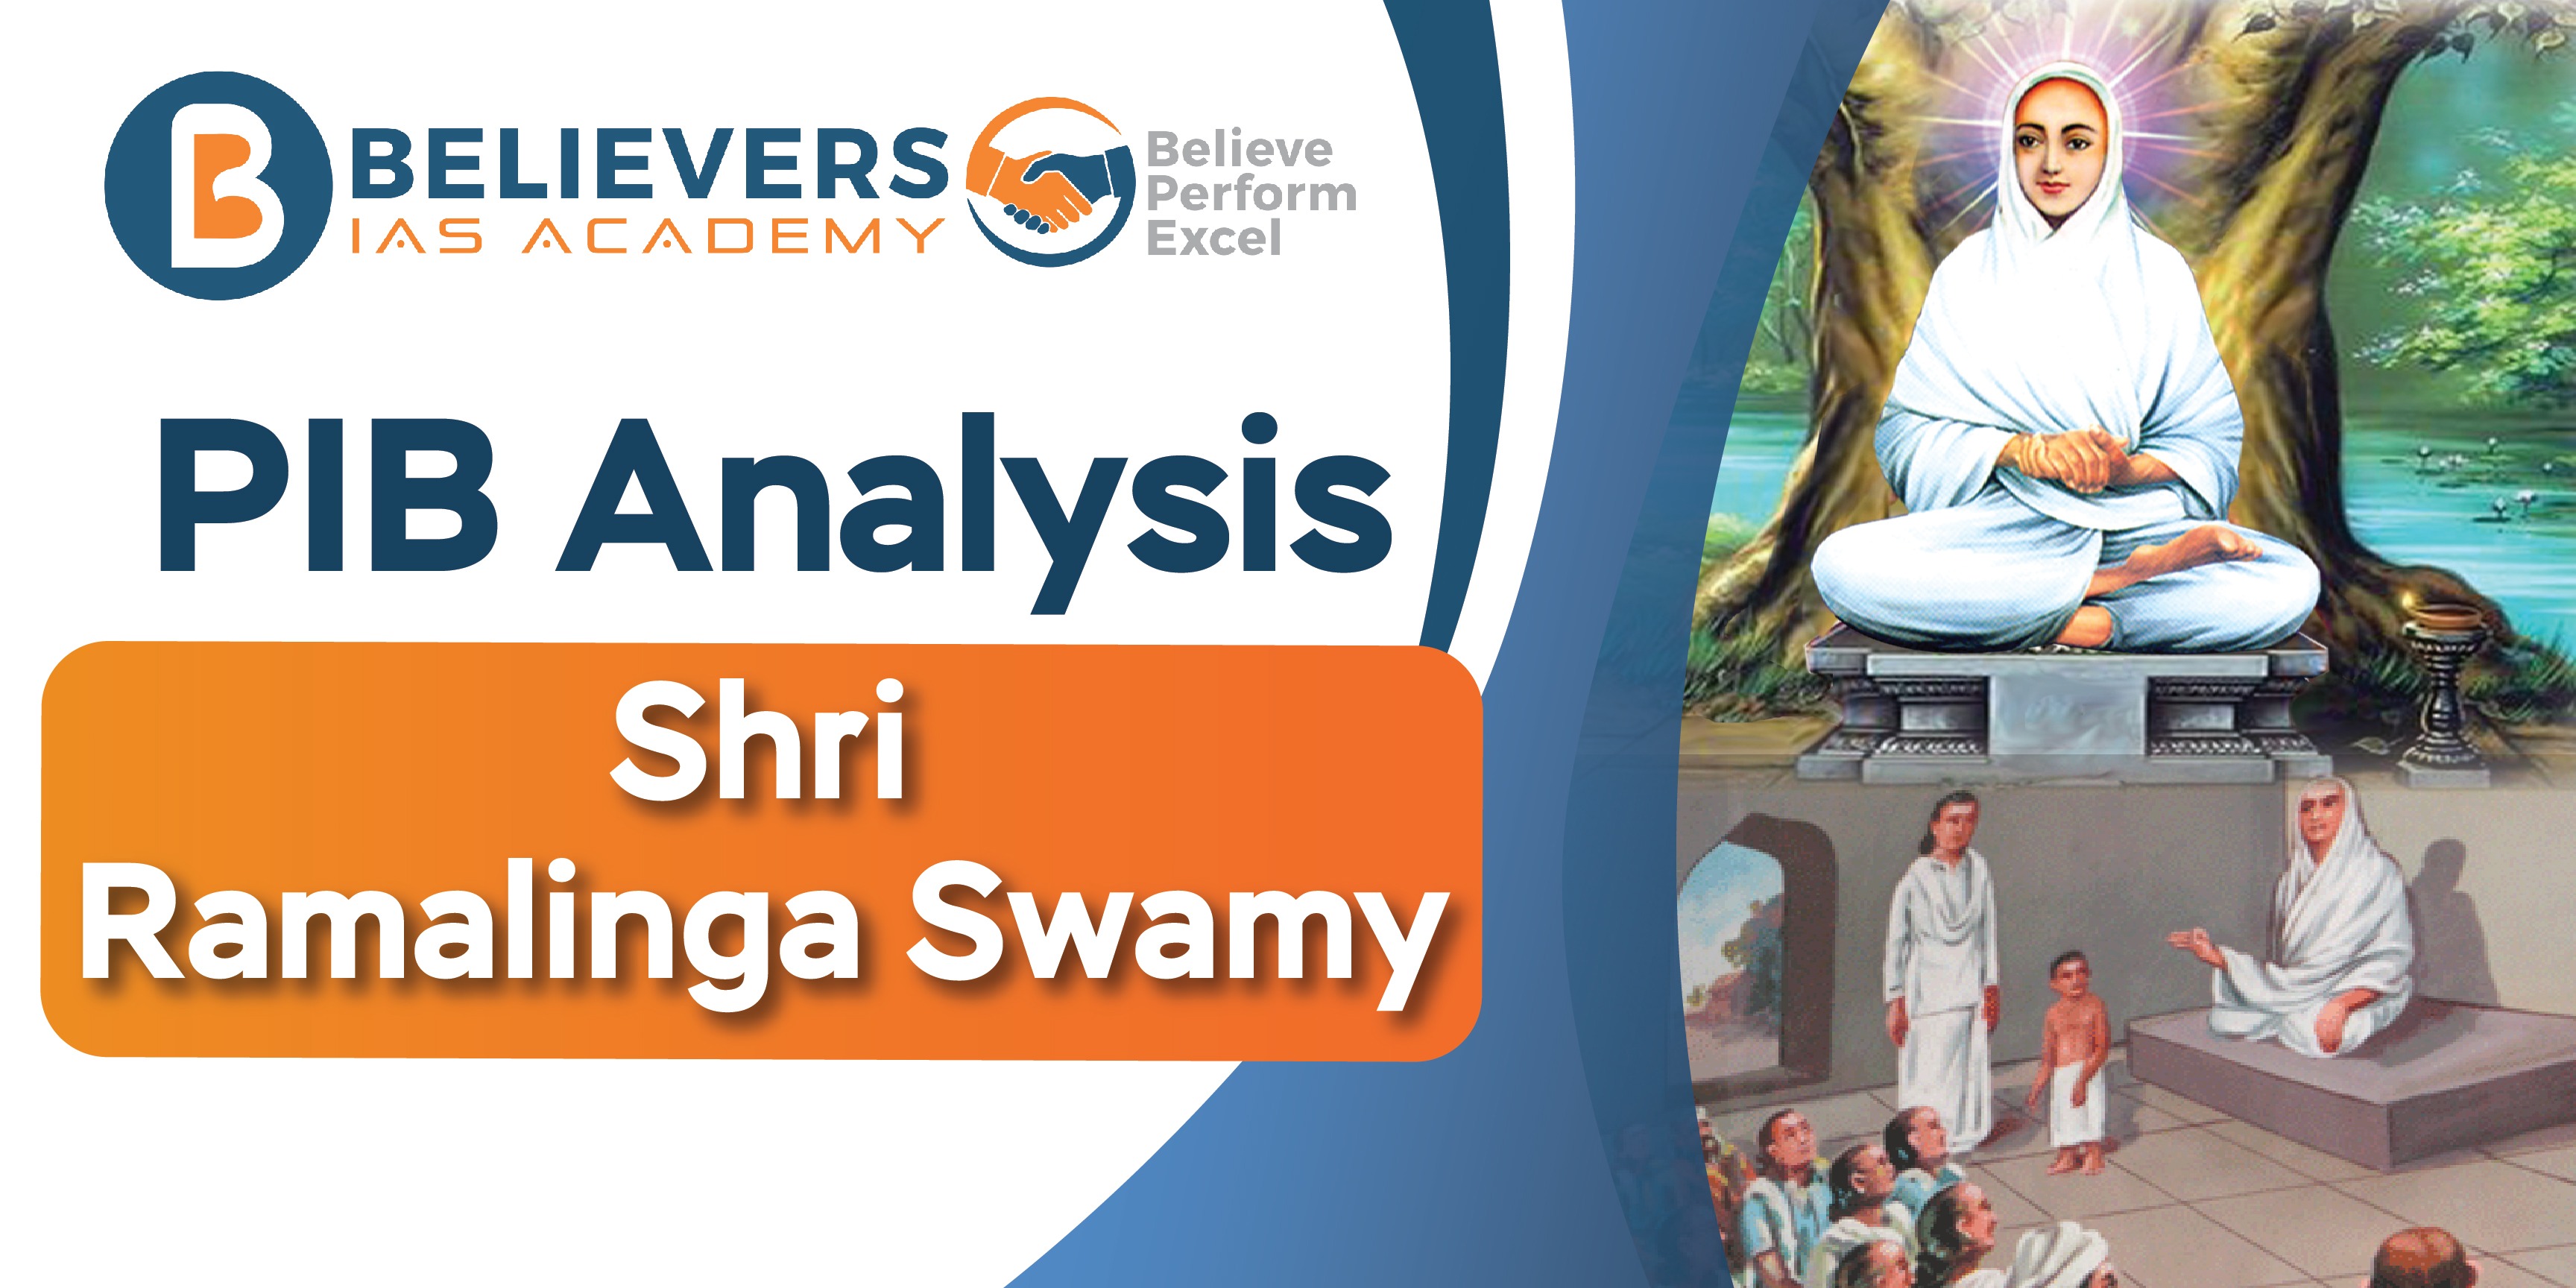 Shri Ramalinga Swamy